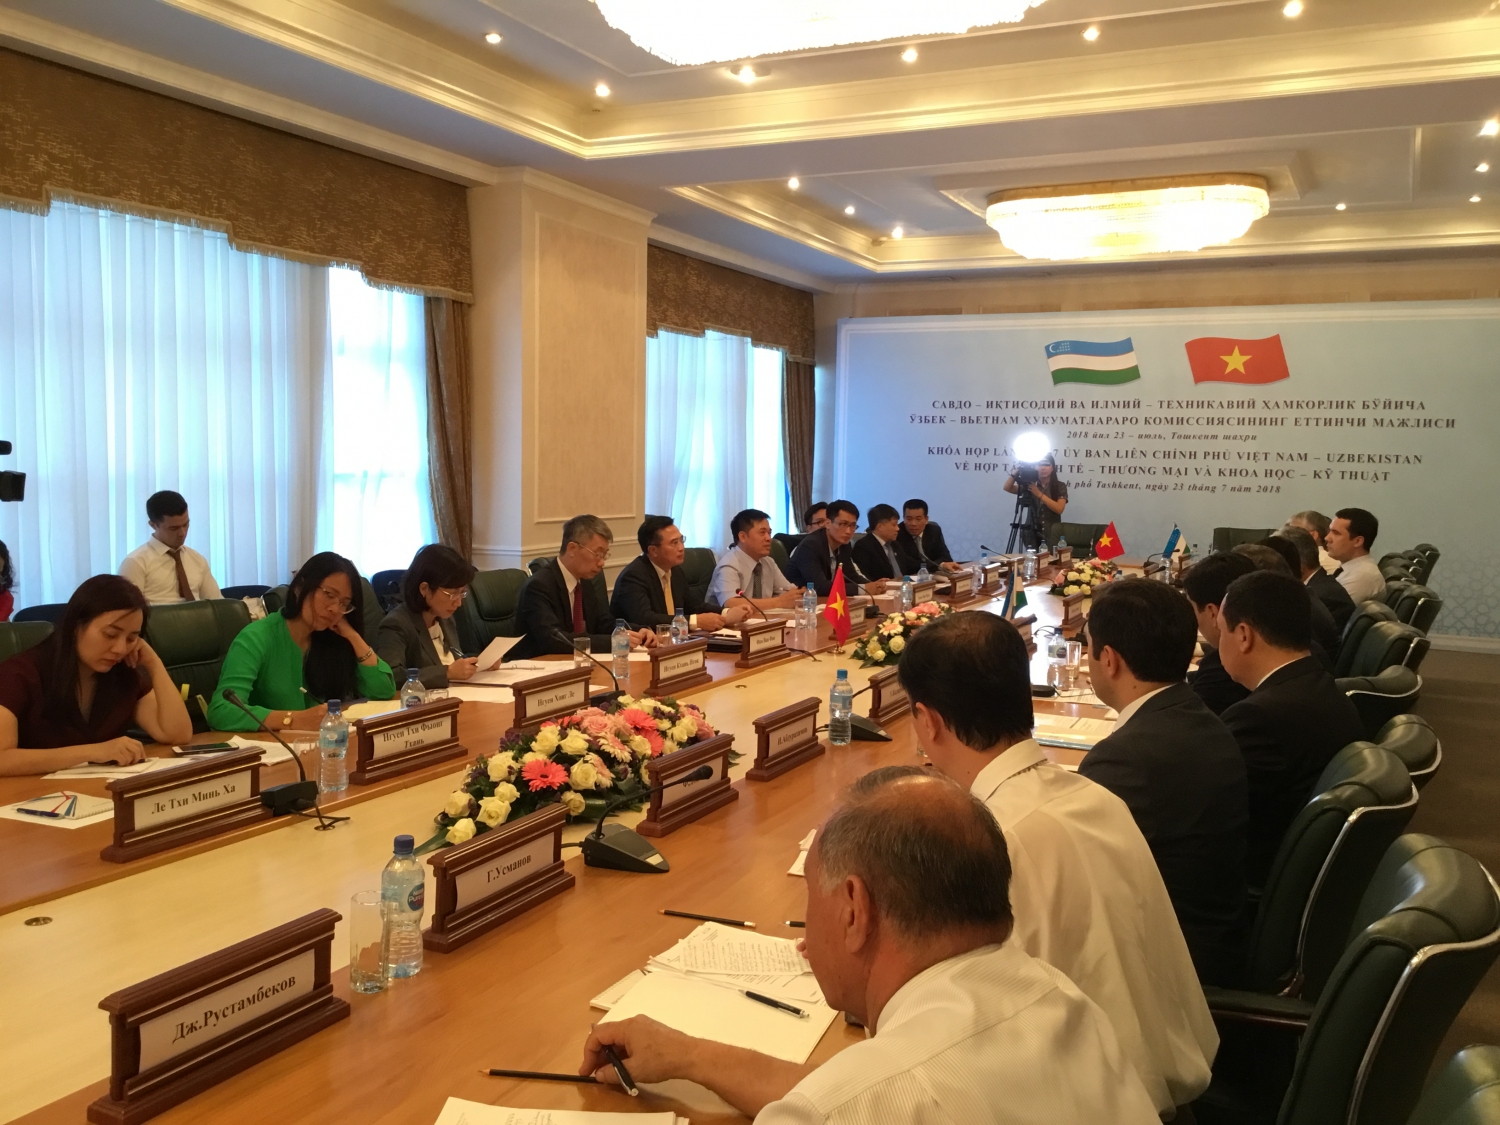 Đoàn công tác của PVN tham dự Khóa họp lần thứ 7 Ủy ban Liên Chính phủ Việt Nam - Uzbekistan